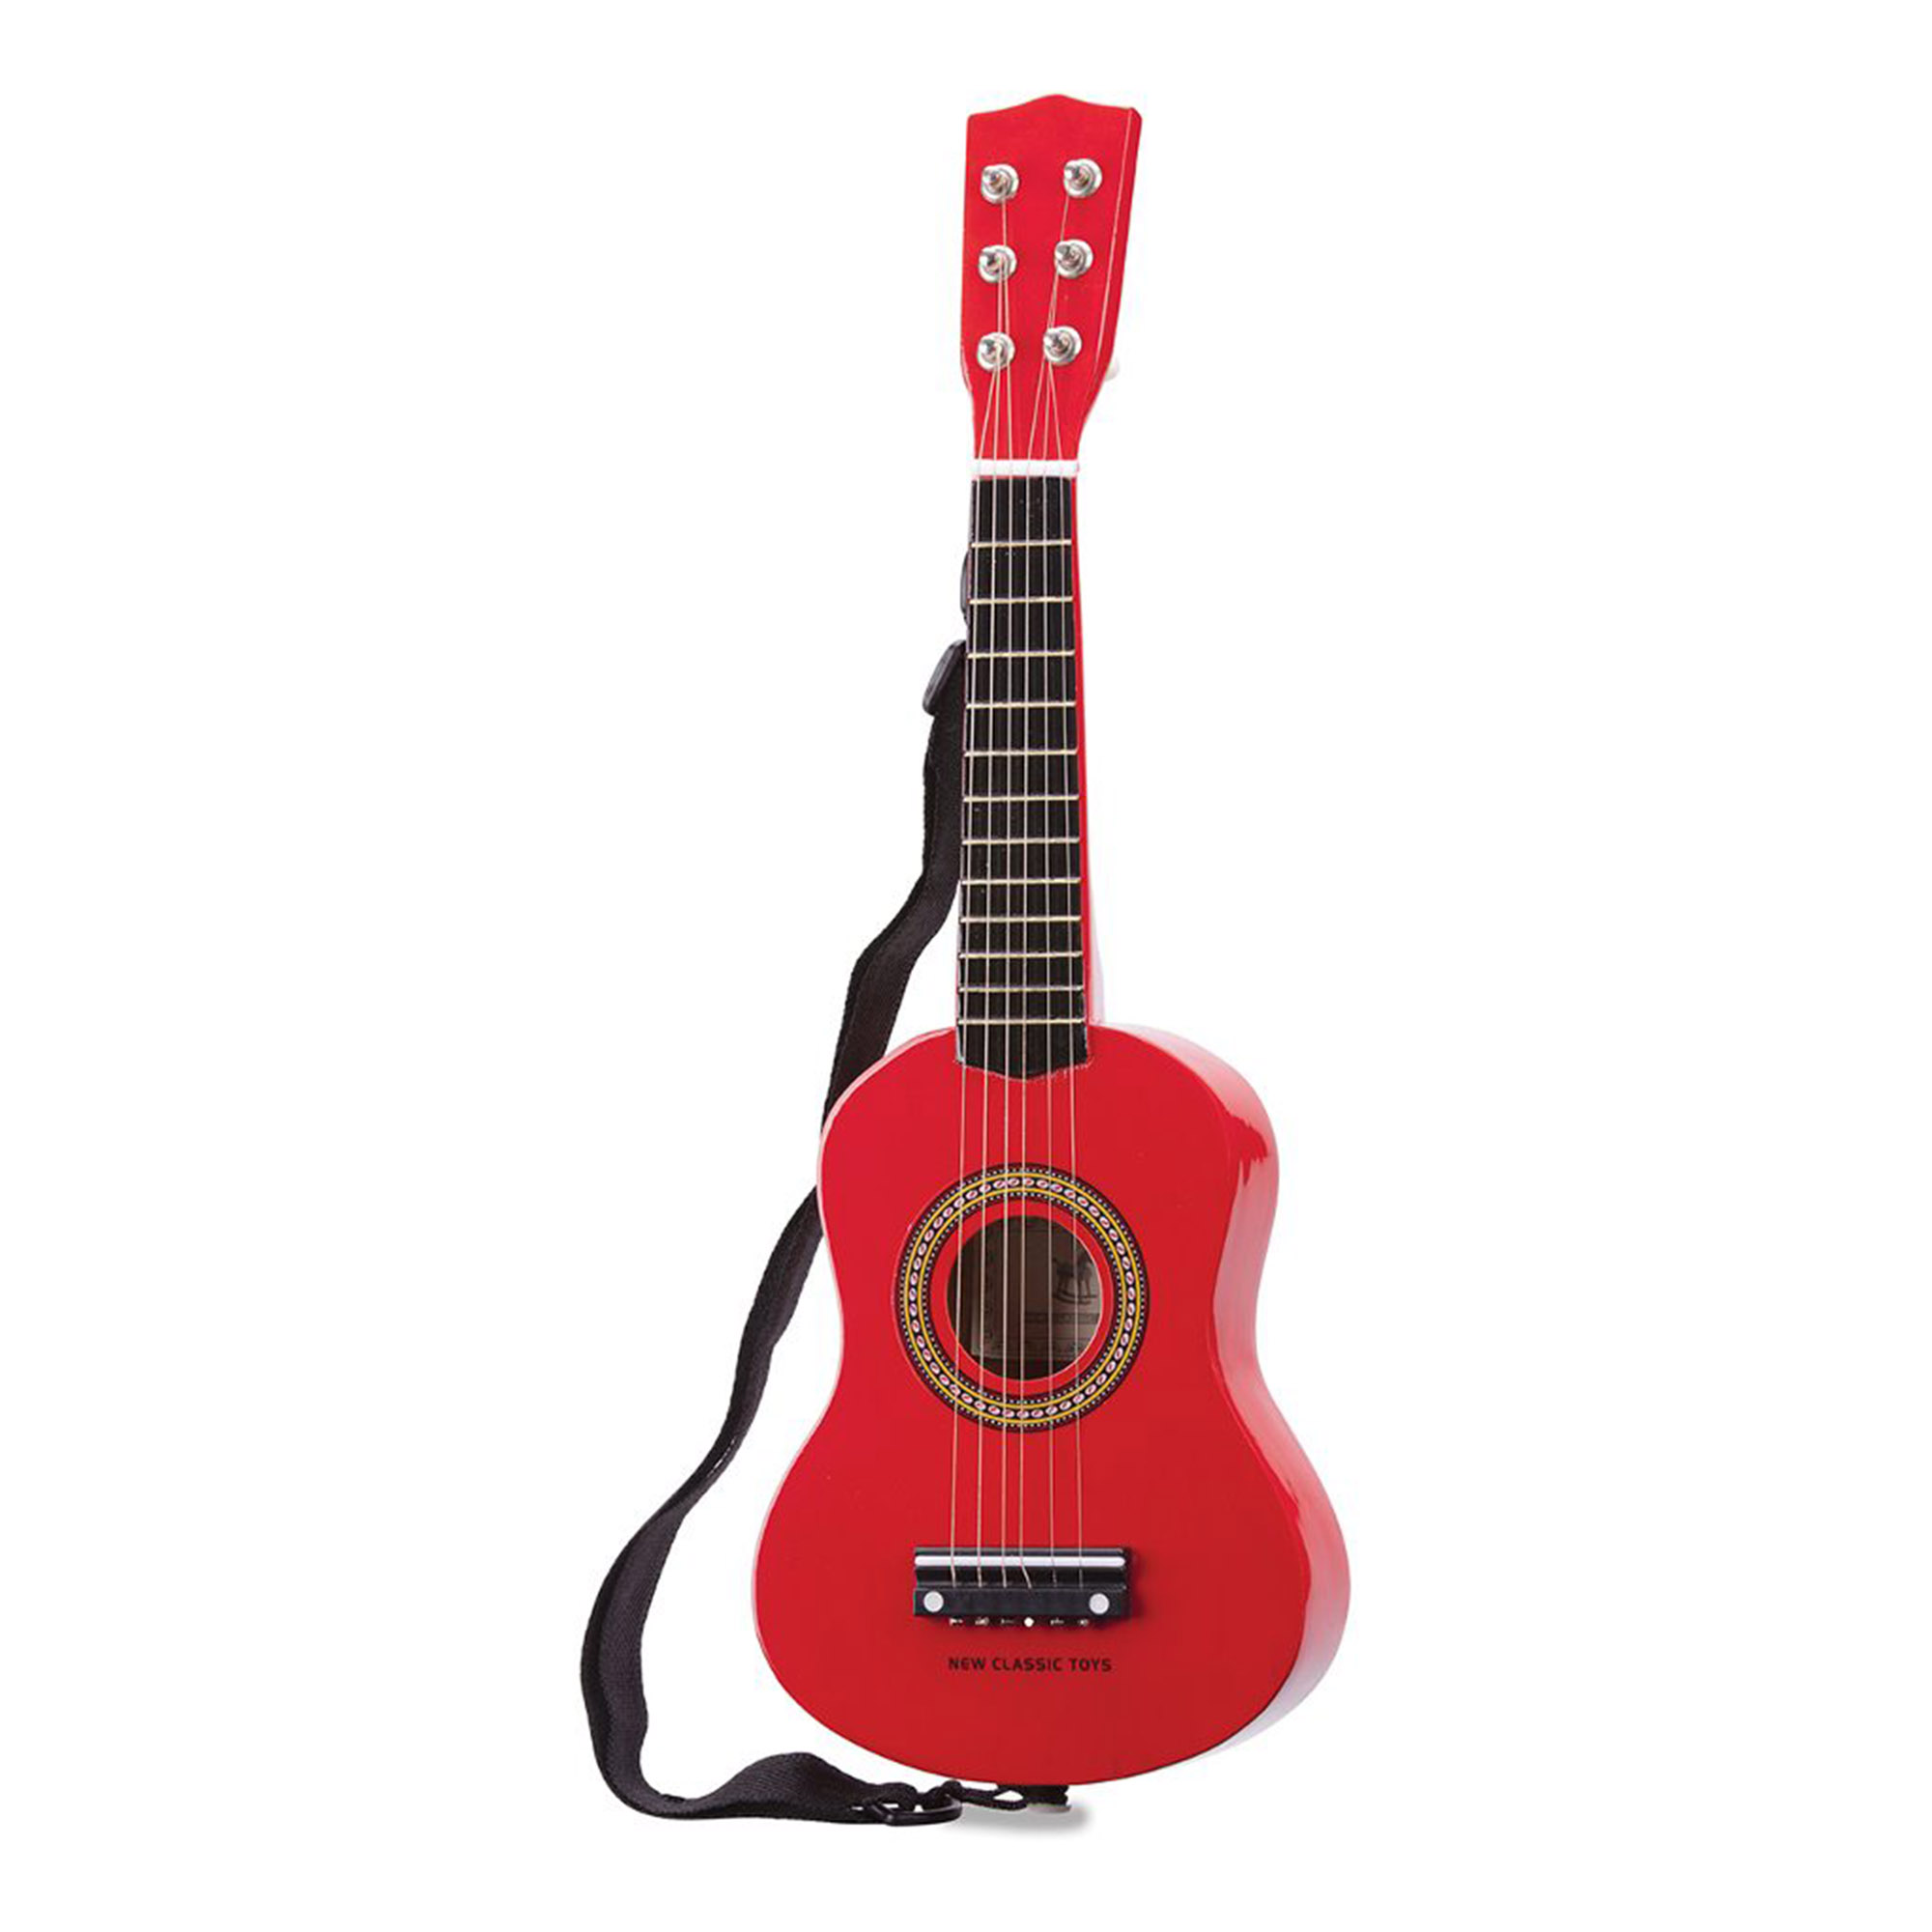 Гитара детская New Classic Toys красная 60 см